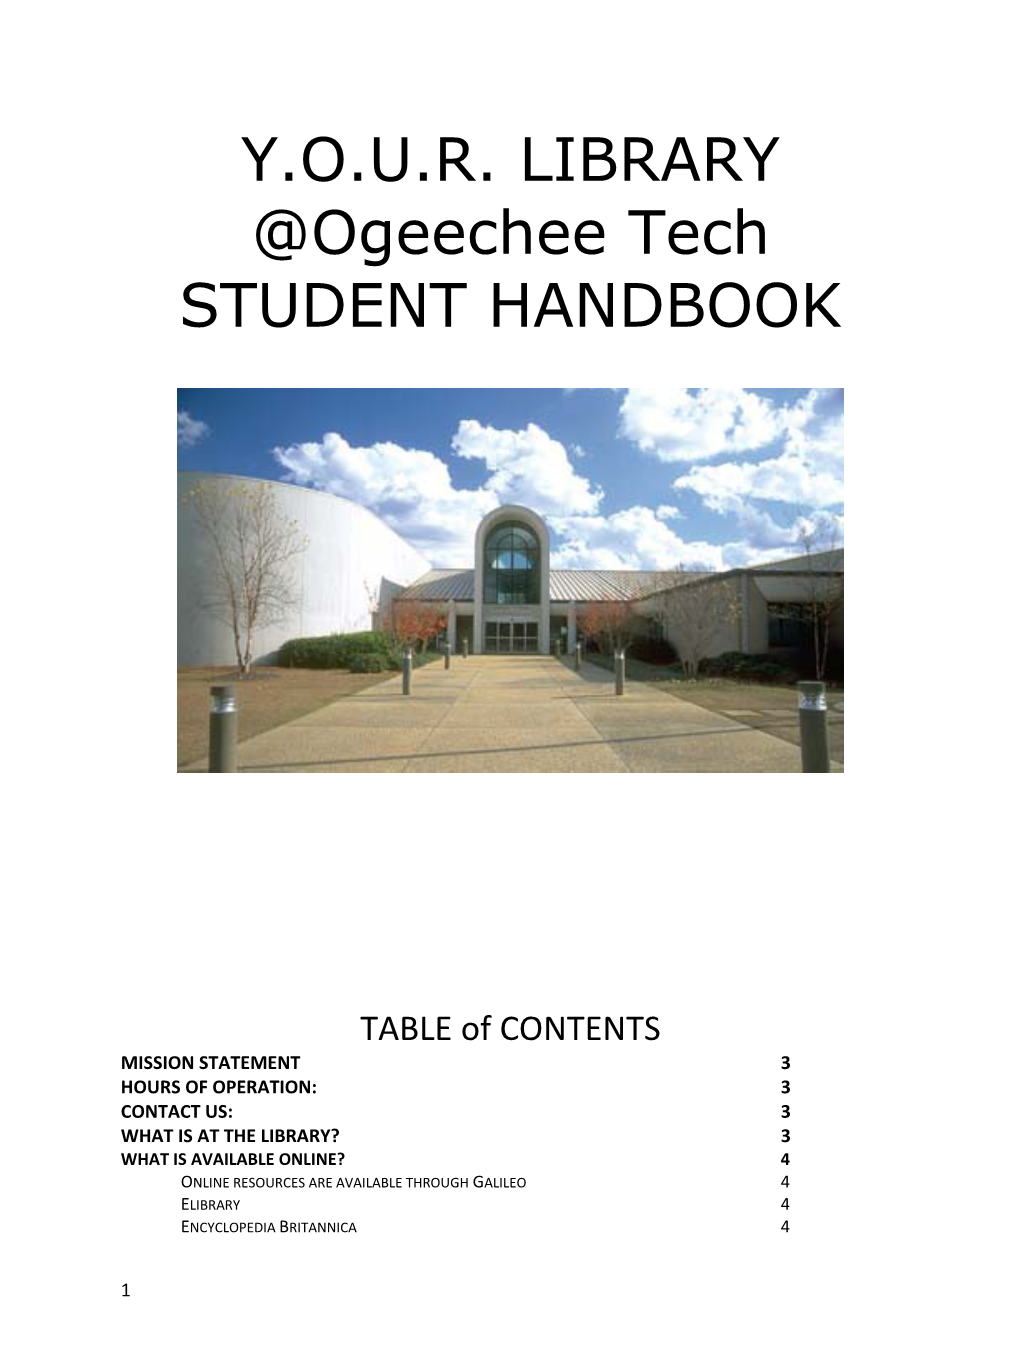 Ogeechee Tech